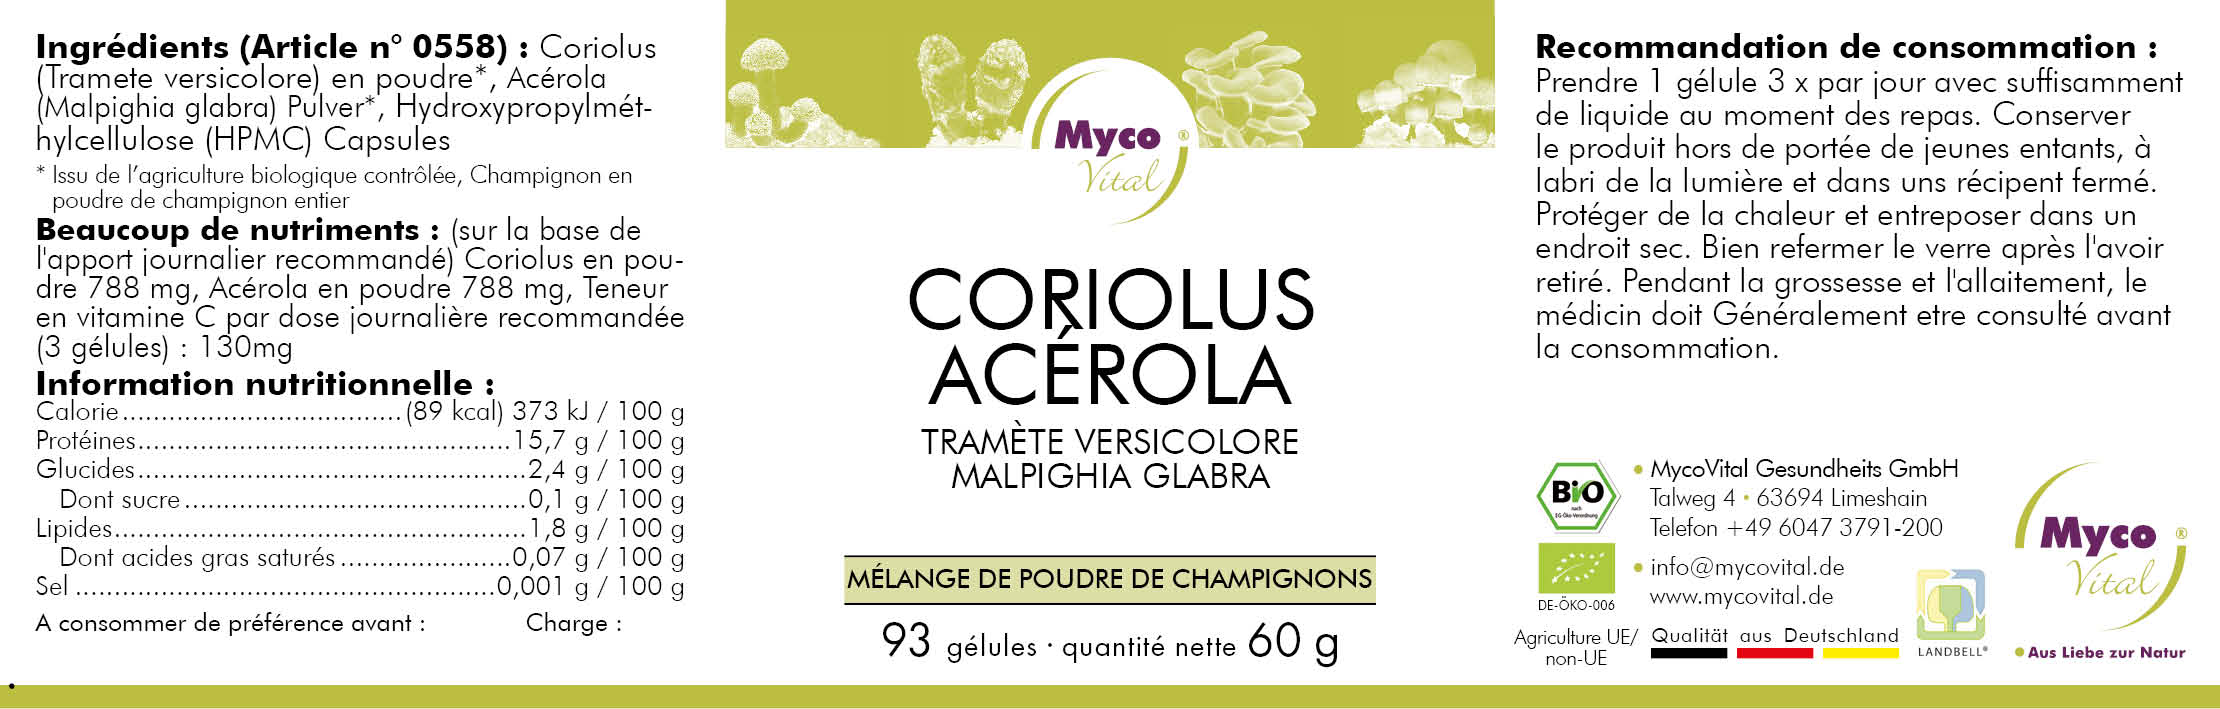 Coriolus-ACEROLA Capsules de poudre de champignons bio (mélange 558)